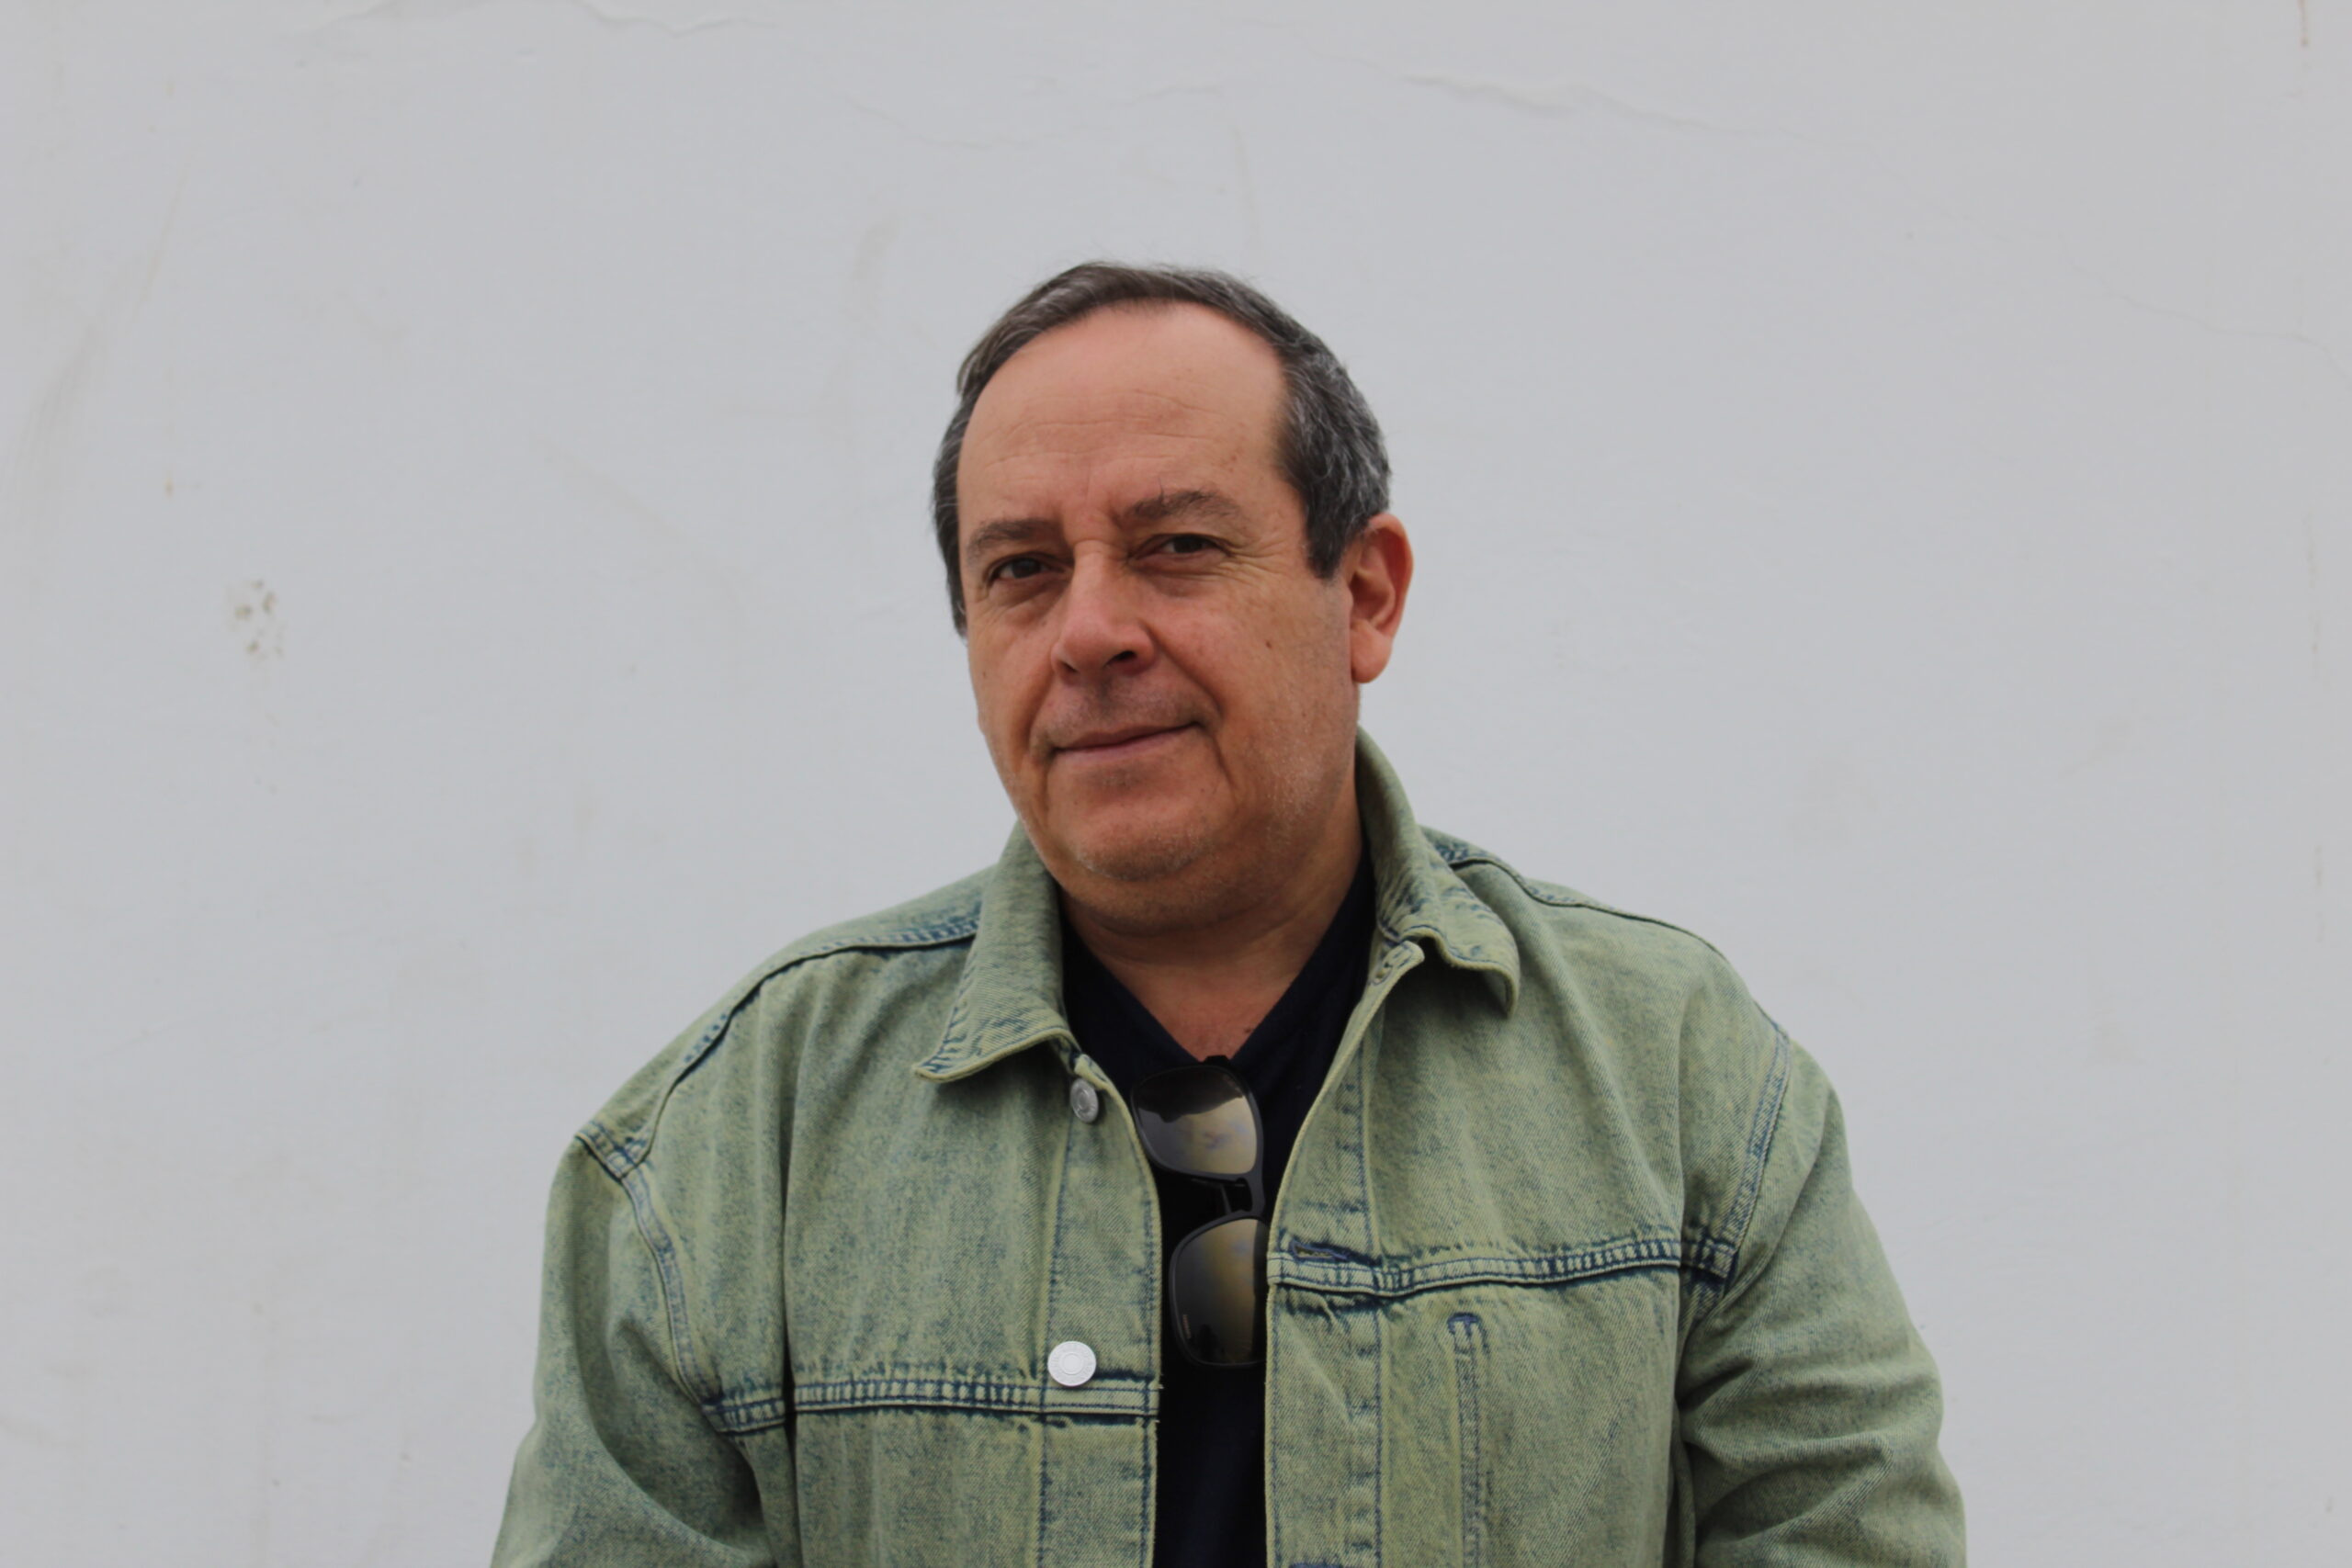 Raúl Jiménez